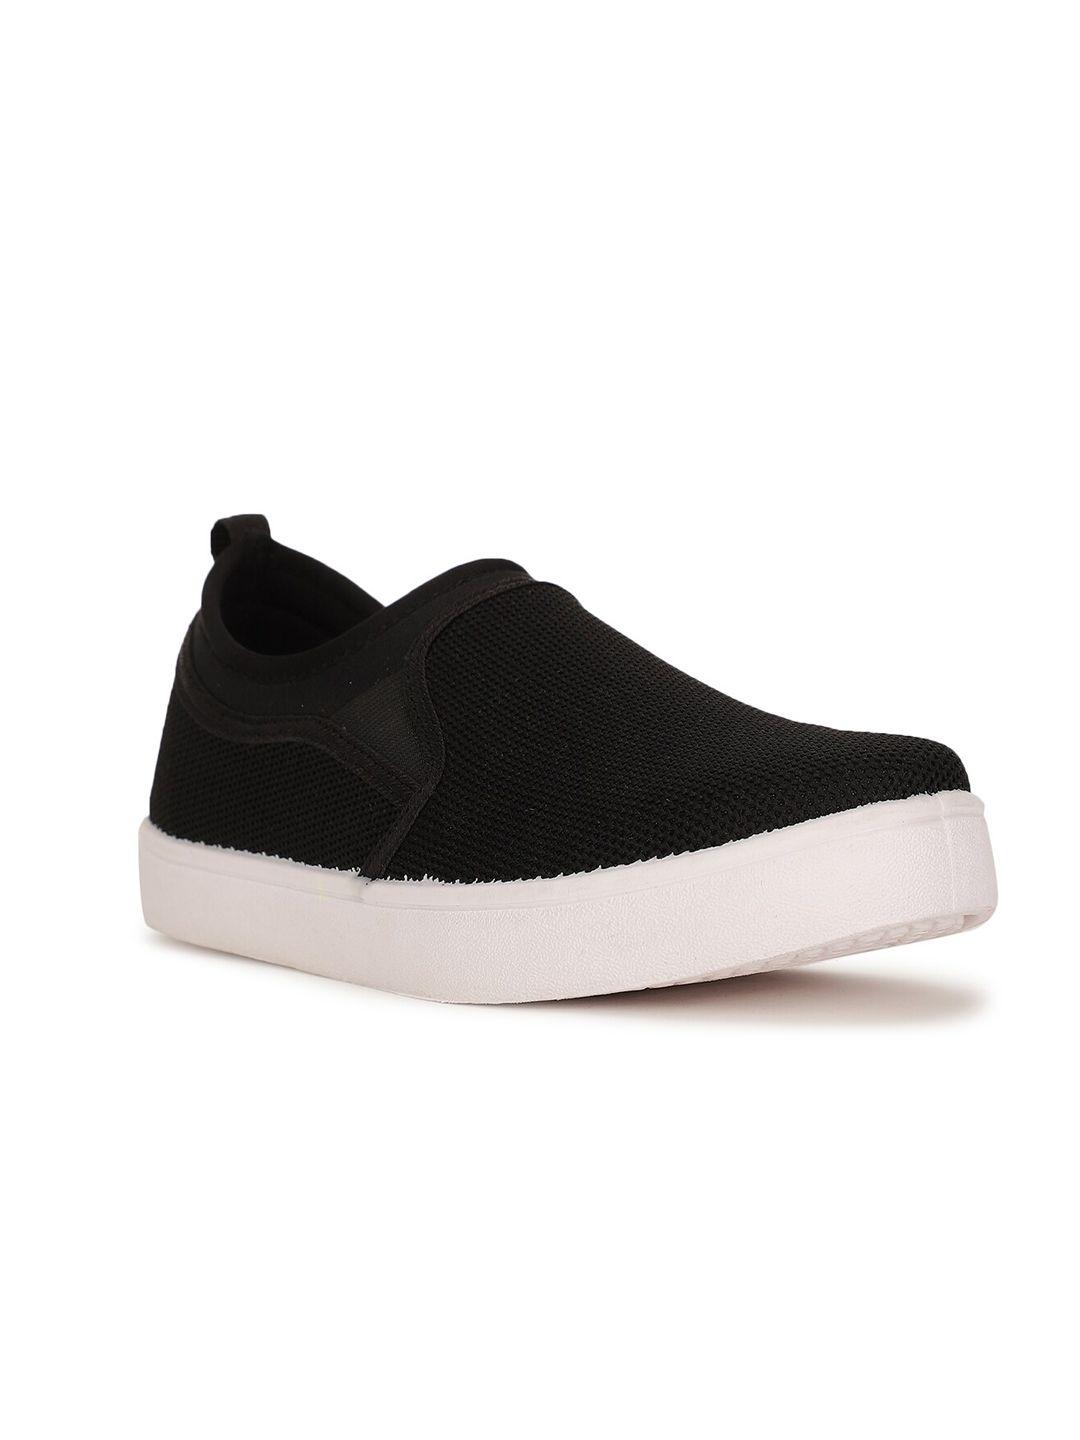 bata boys black woven design slip-on sneakers